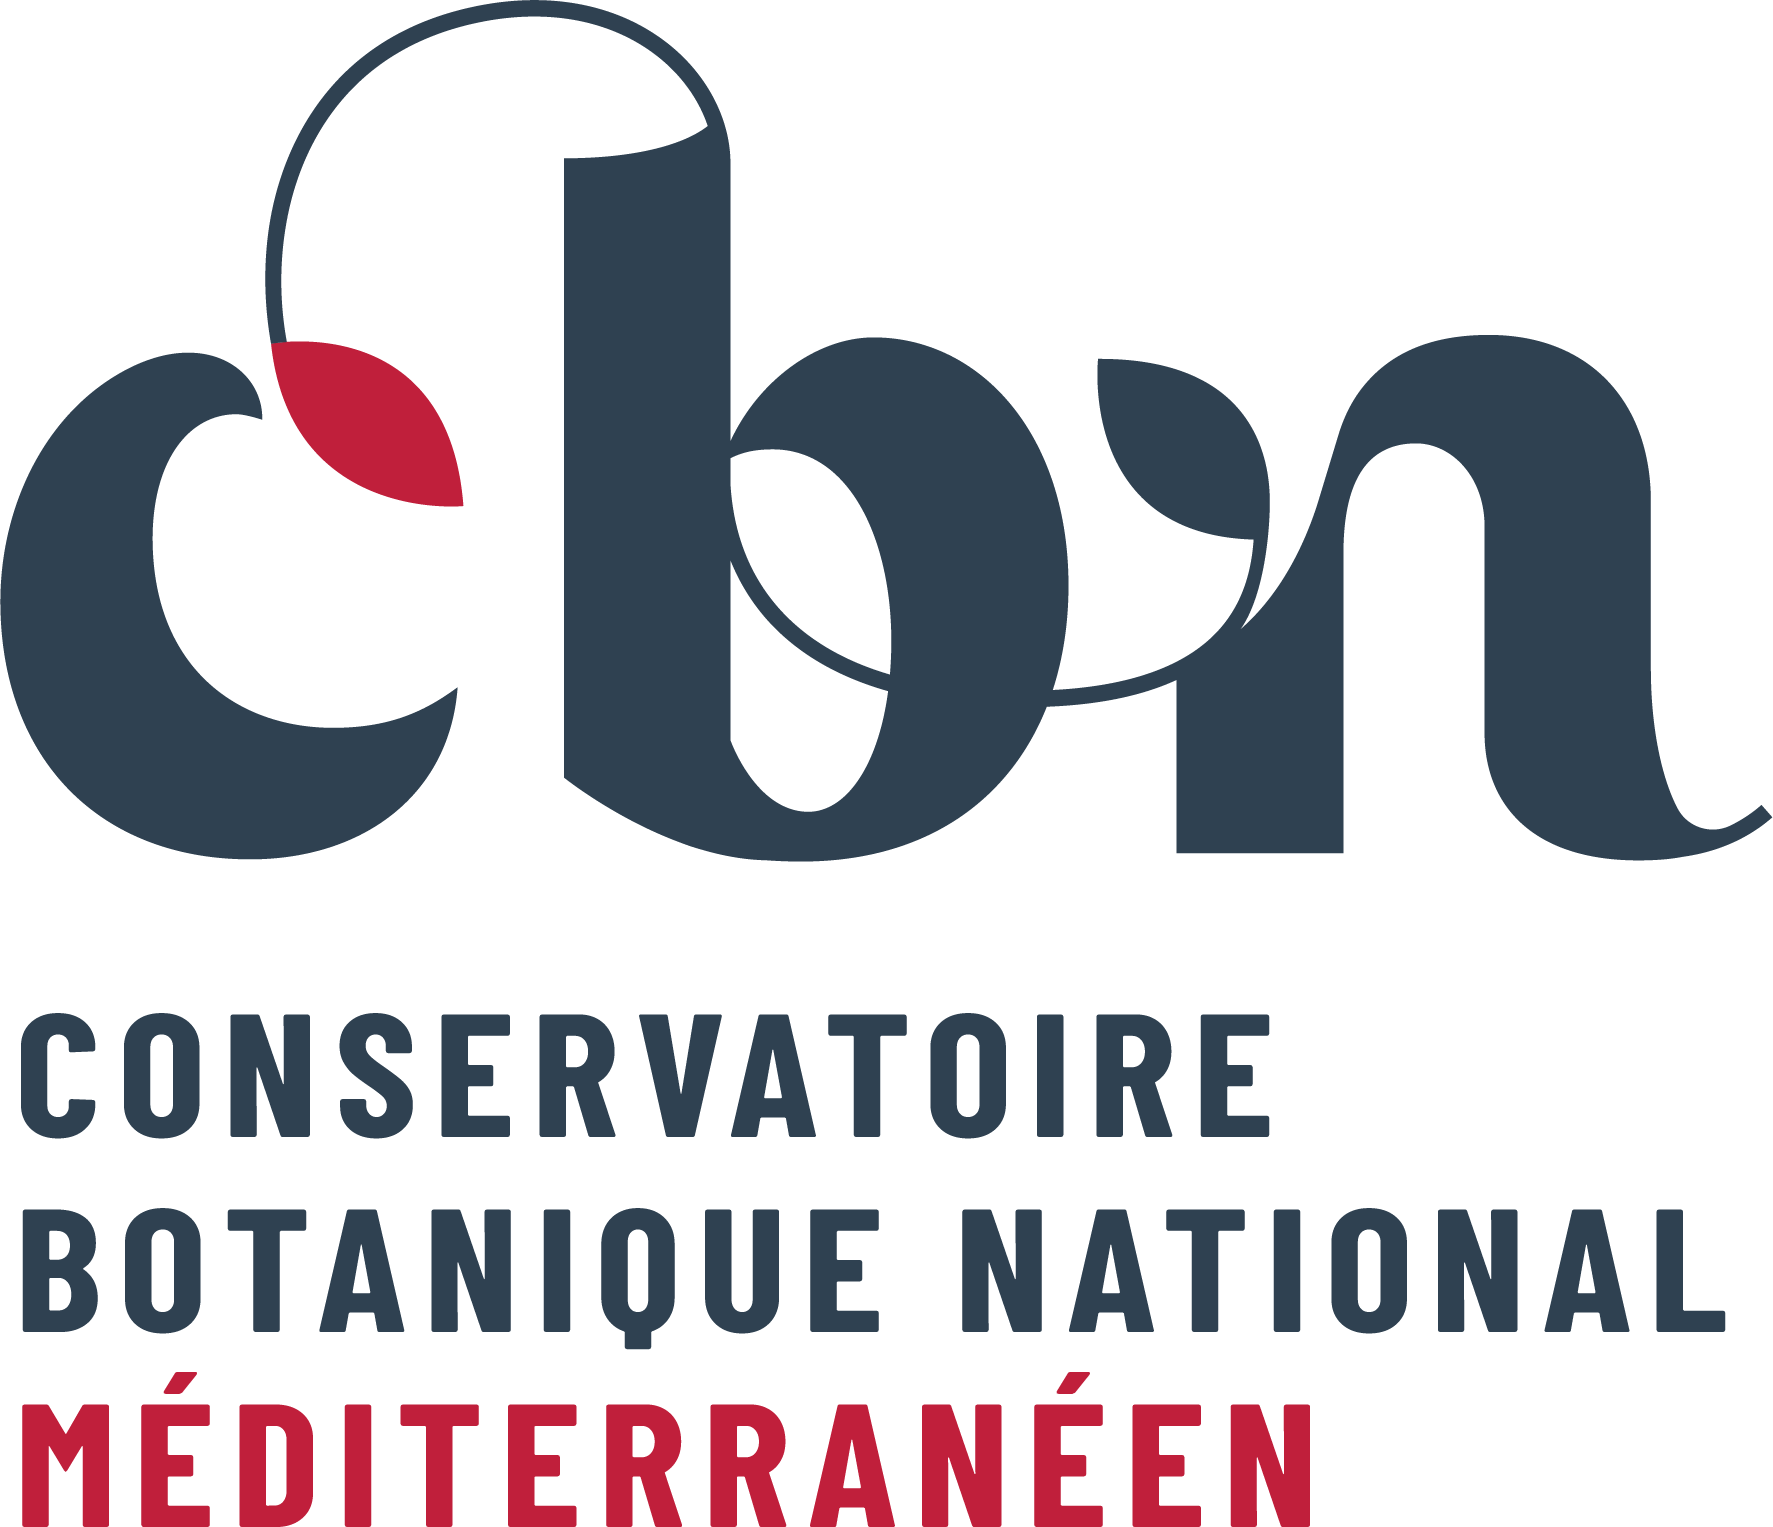 Conservatoire botanique national méditerrannéen